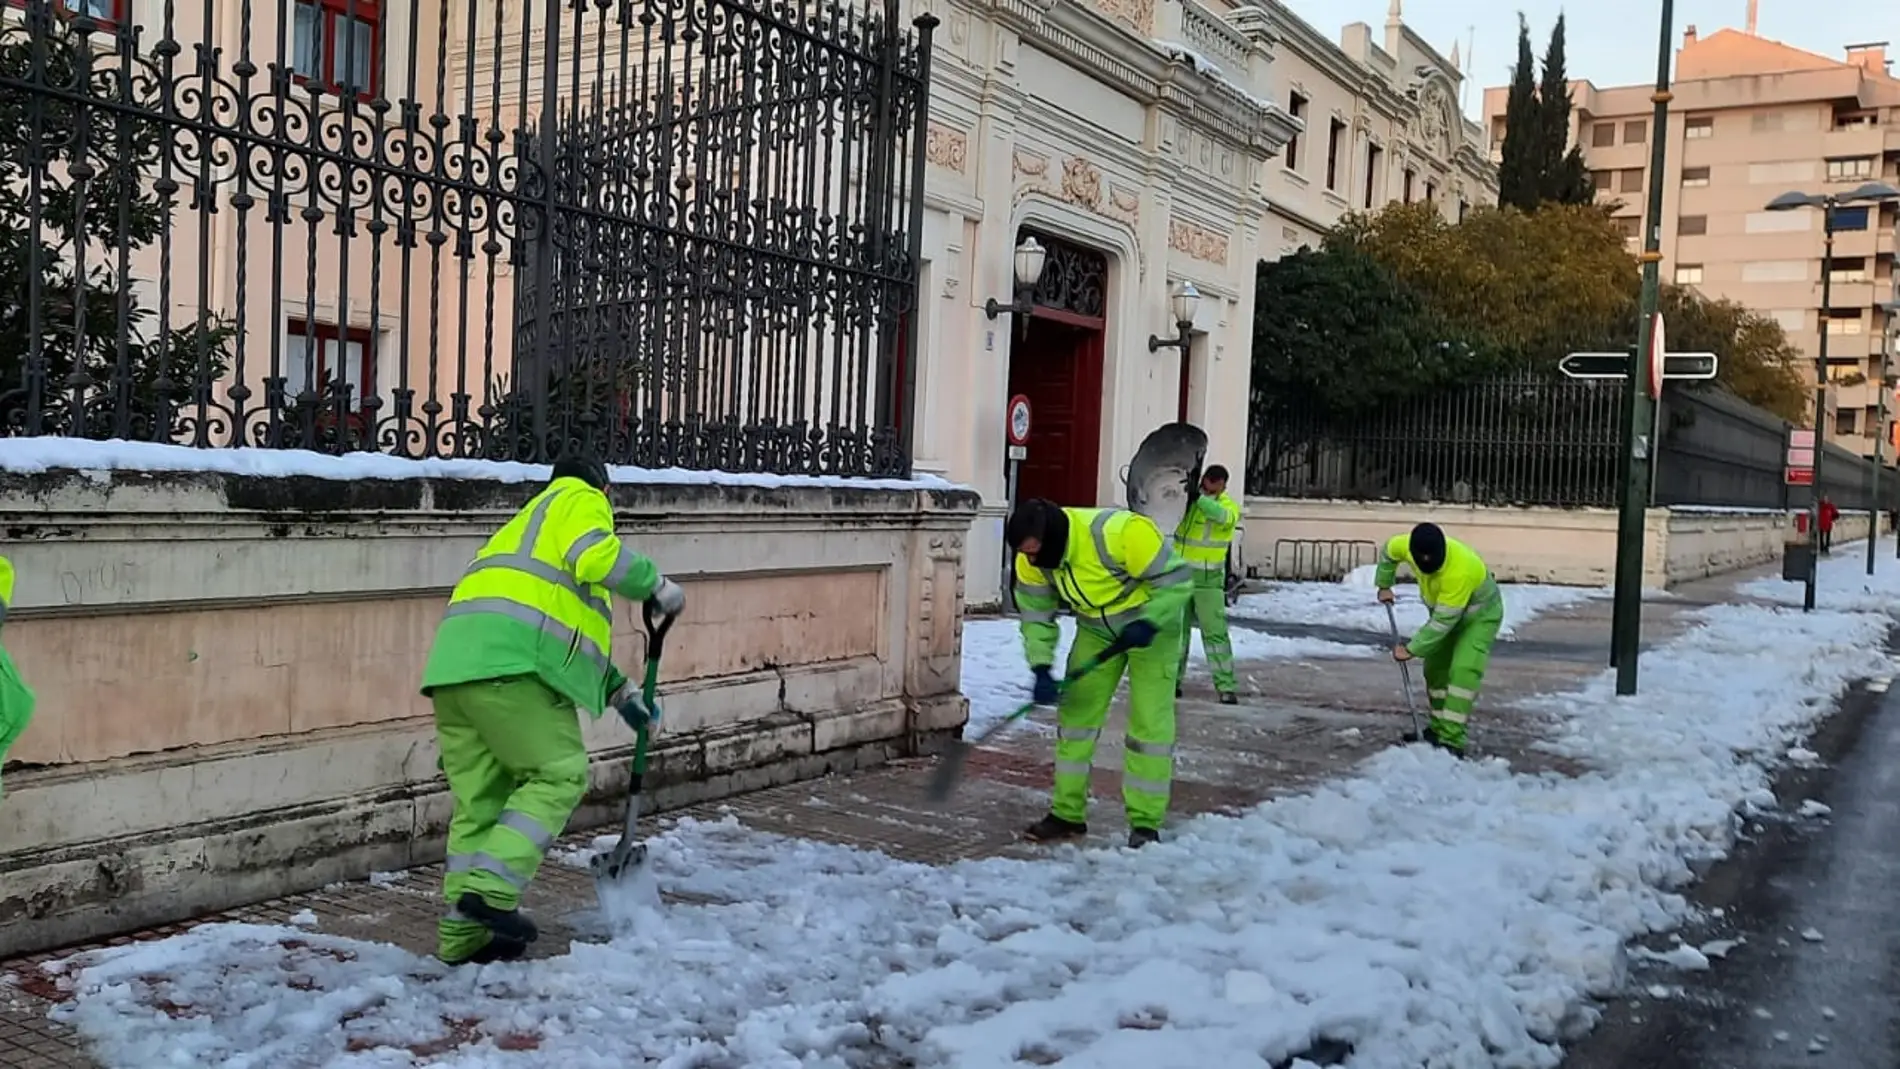 Los operarios de limpieza se han afanado para retirar la nieve de la calzada